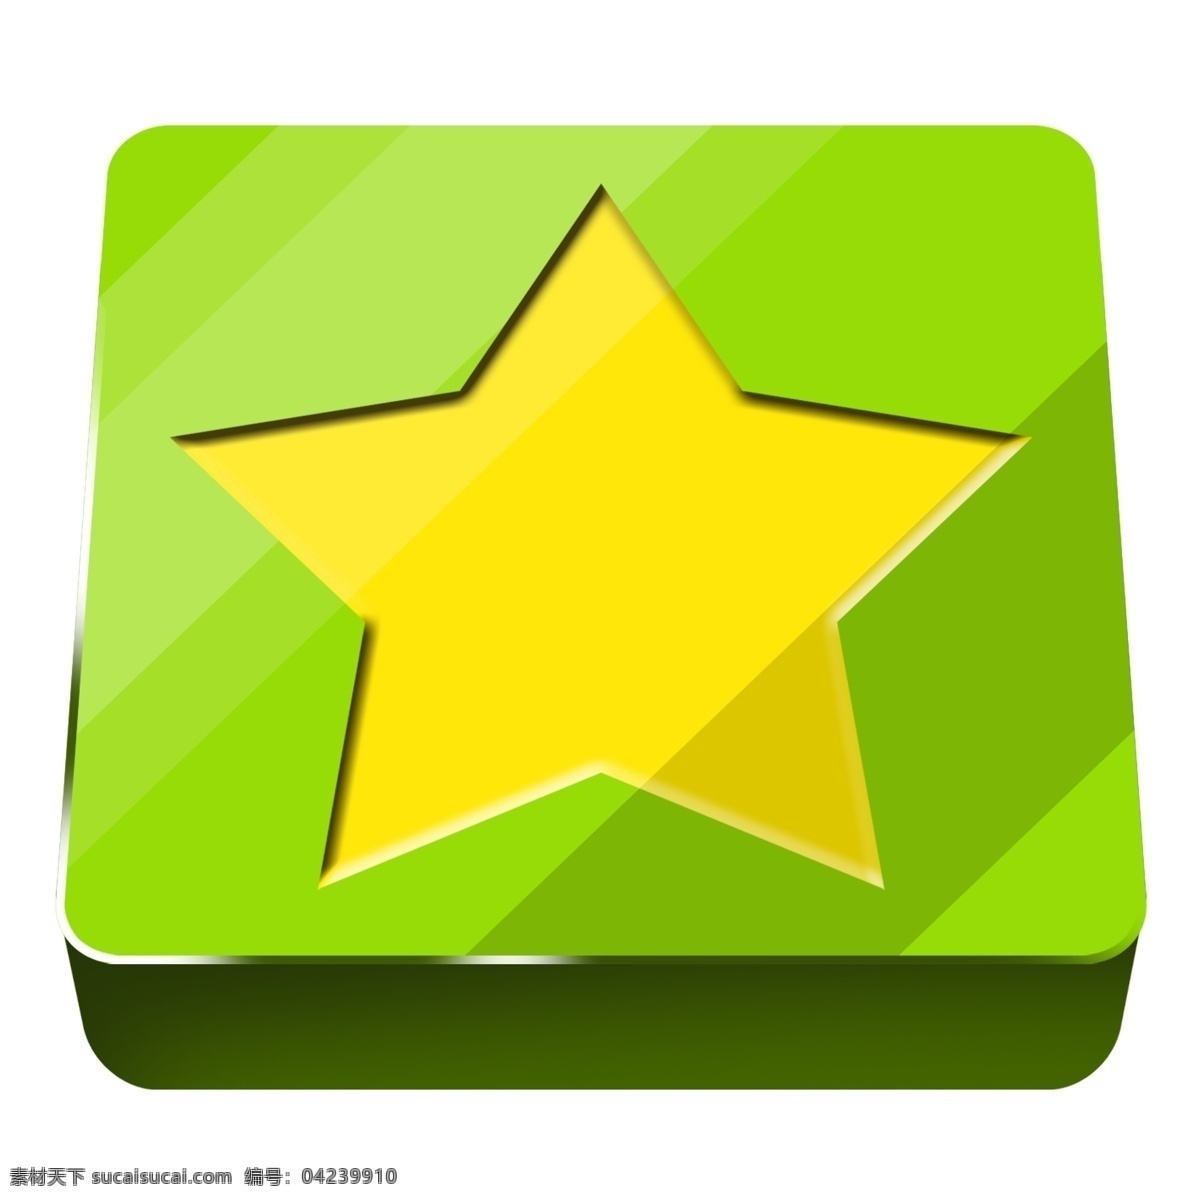 创意 星星 按钮 插画 创意绿色按钮 黄色 五角星 手绘星星按钮 手绘按钮插画 卡通 装饰 五角星插画